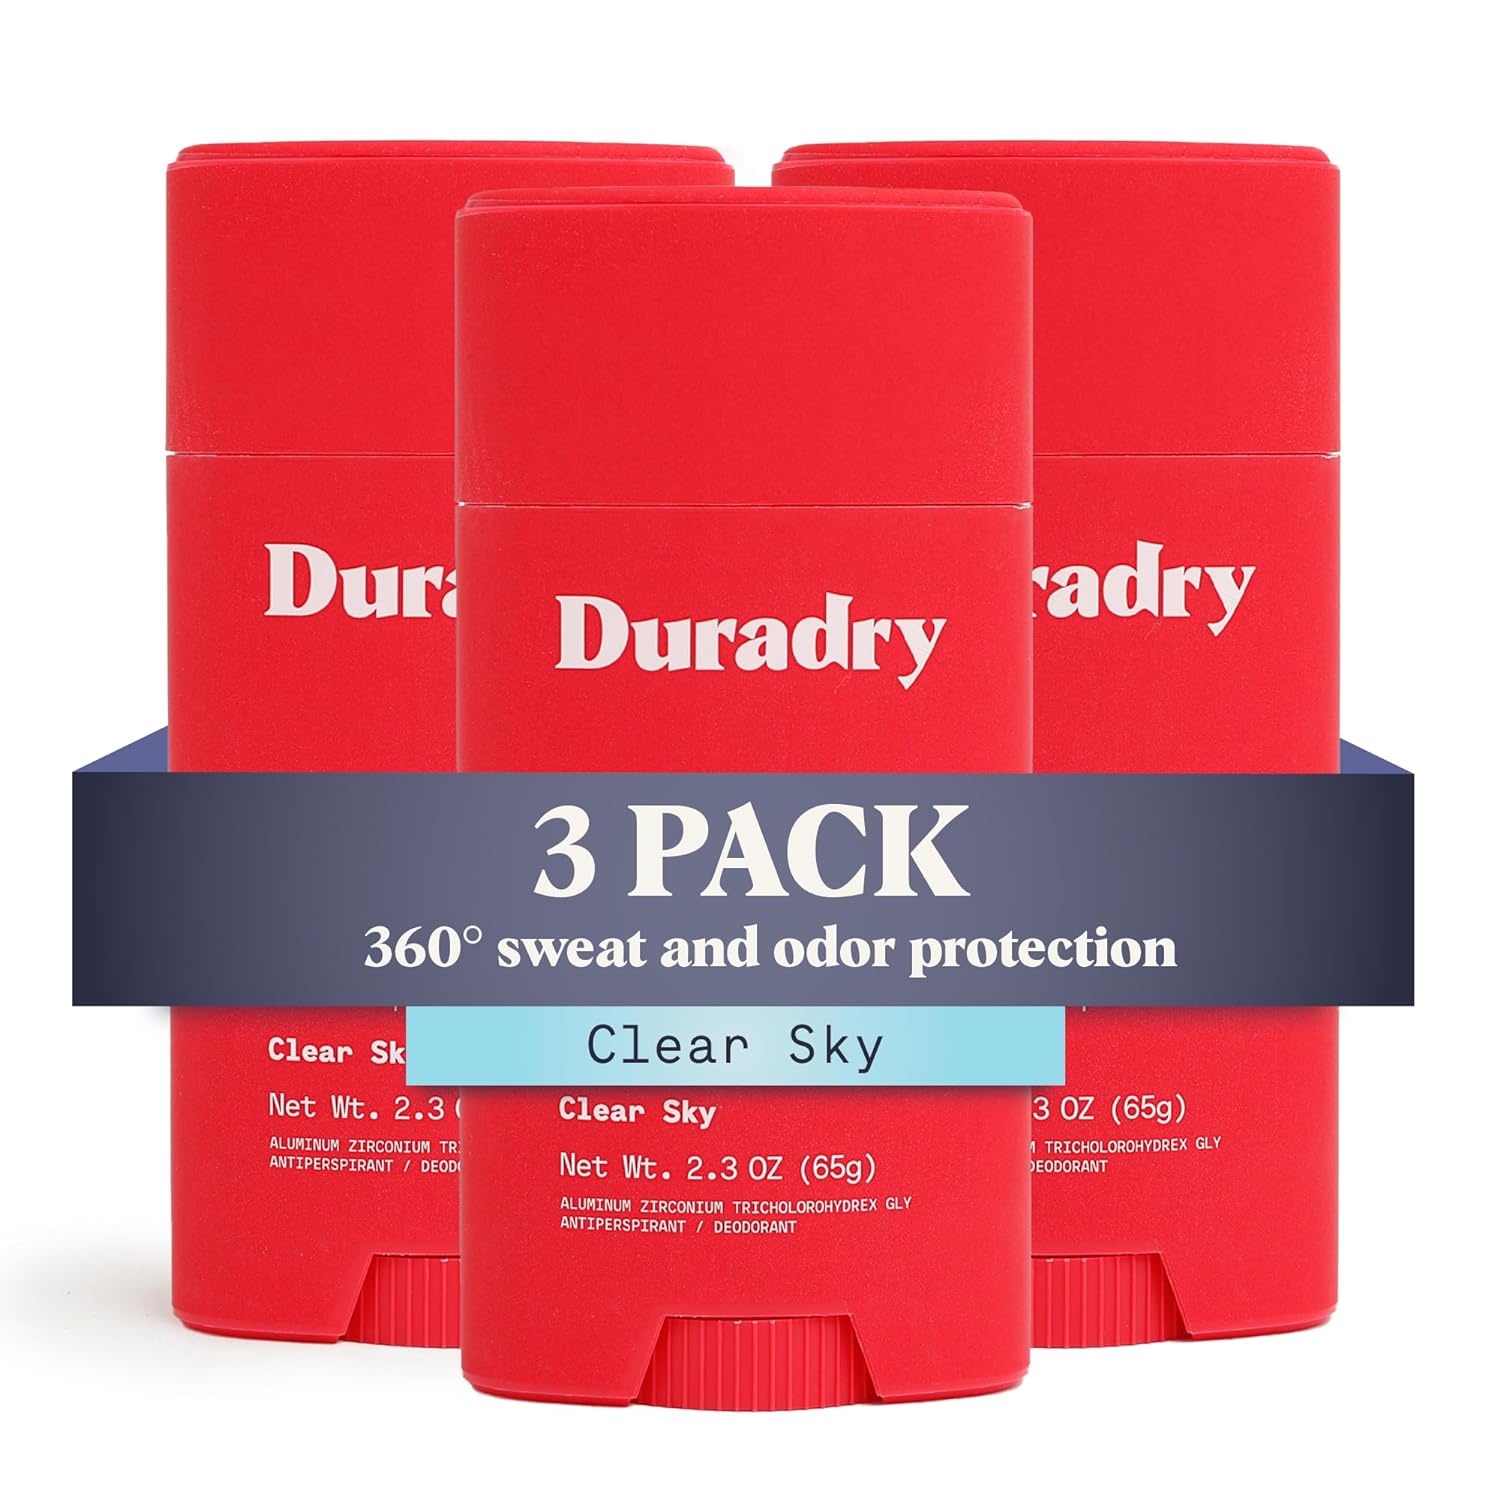 Duradry AM Deodorant & Ant…